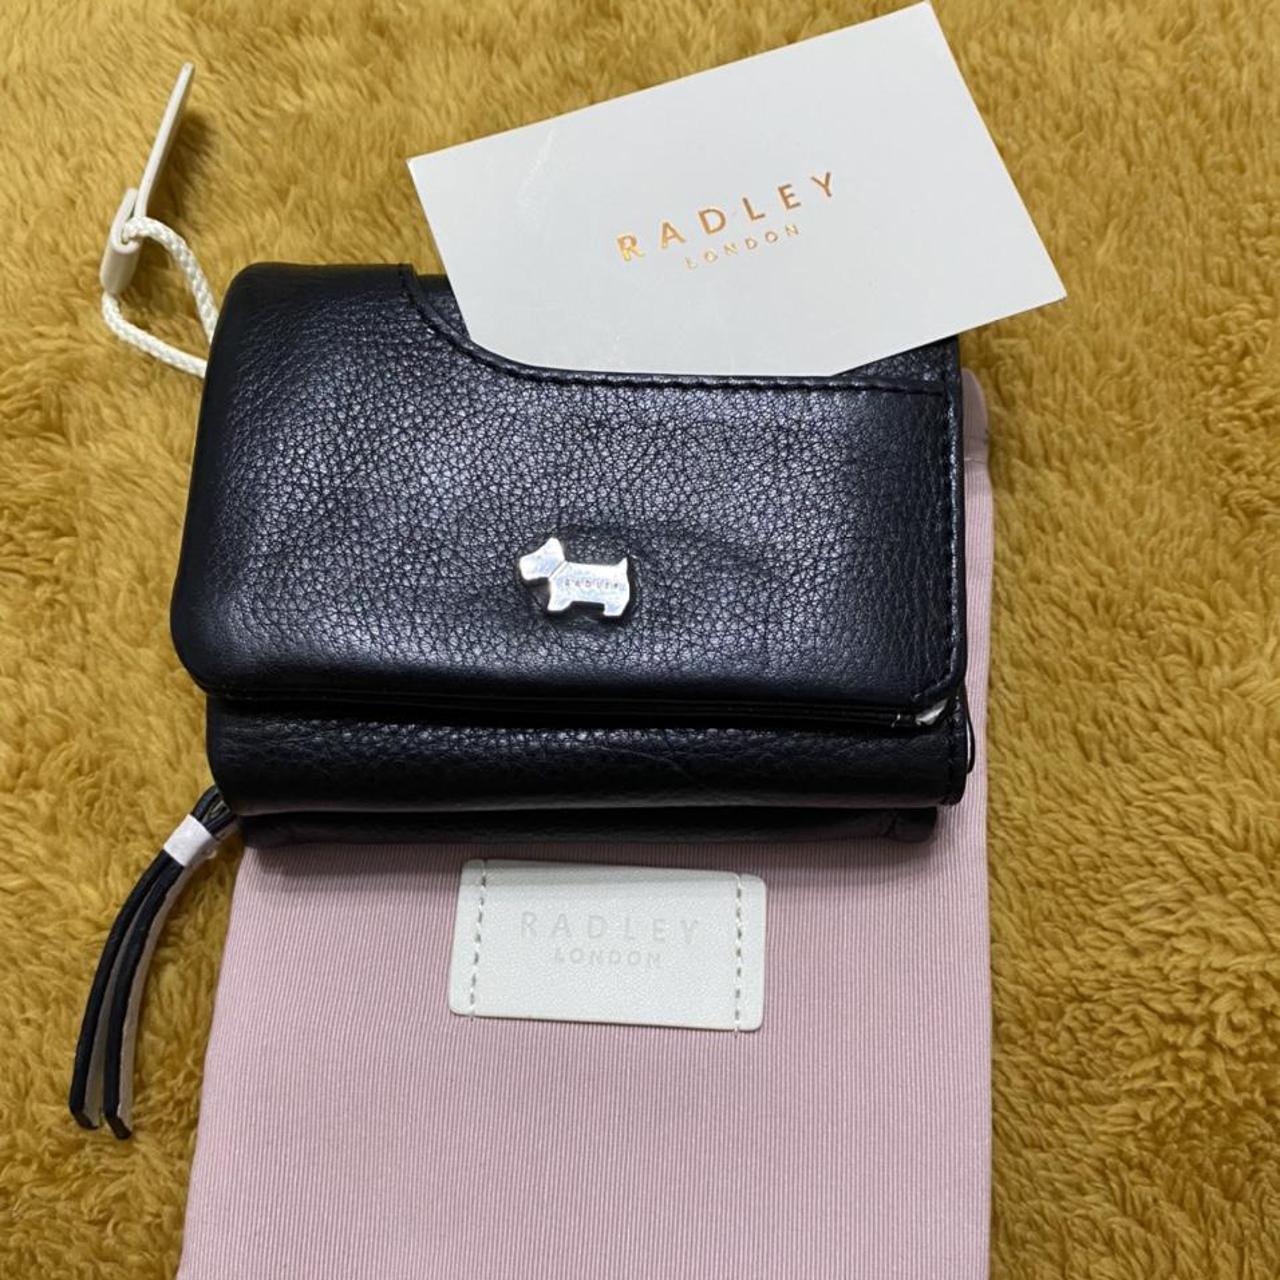 Radley purse | Vinted